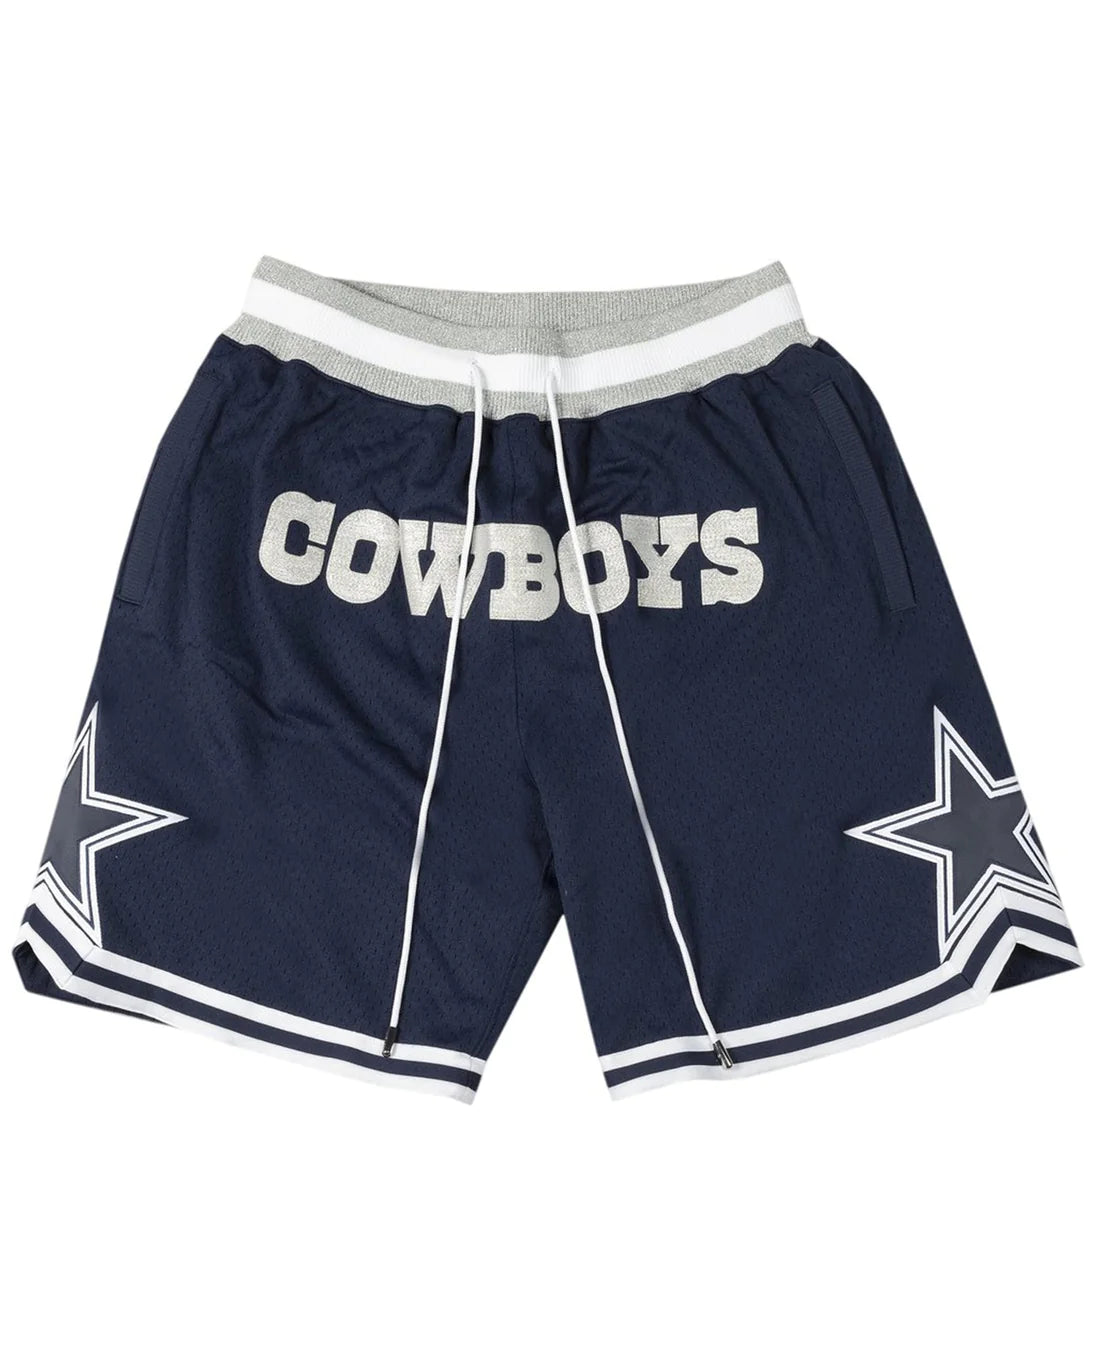 Dallas Cowboys Basketball Shorts